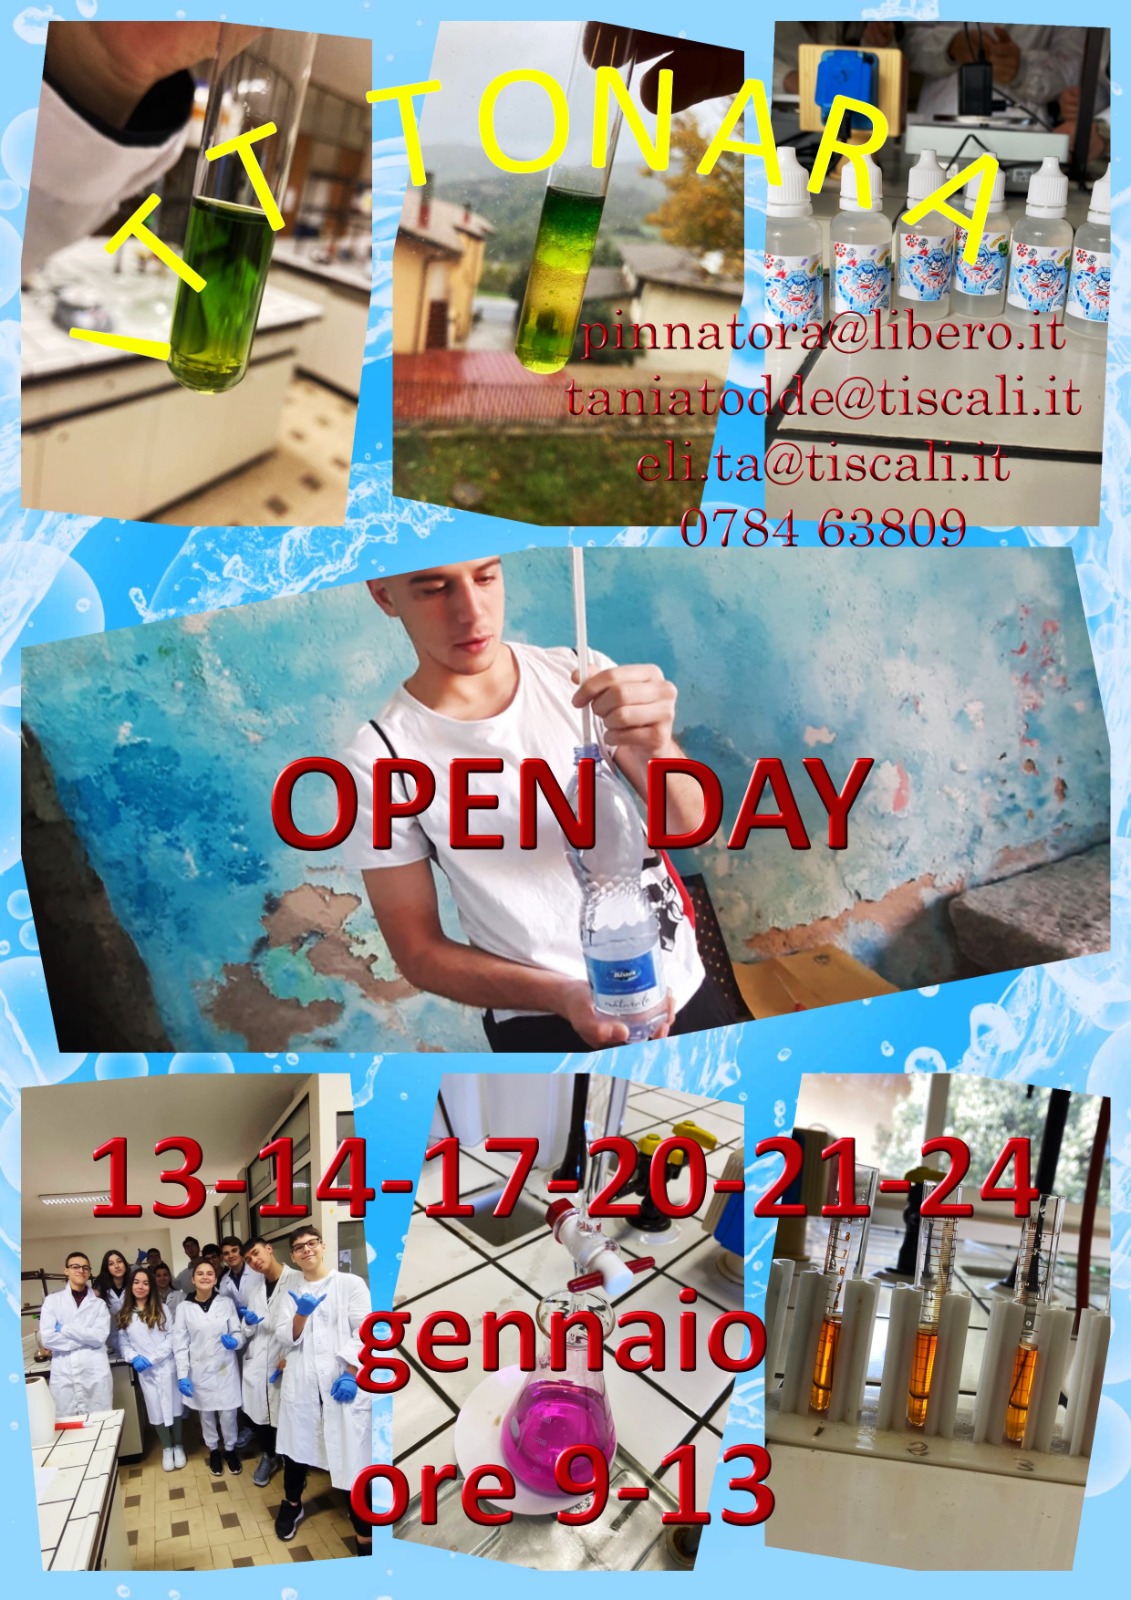 Open Day Tonara 22 23